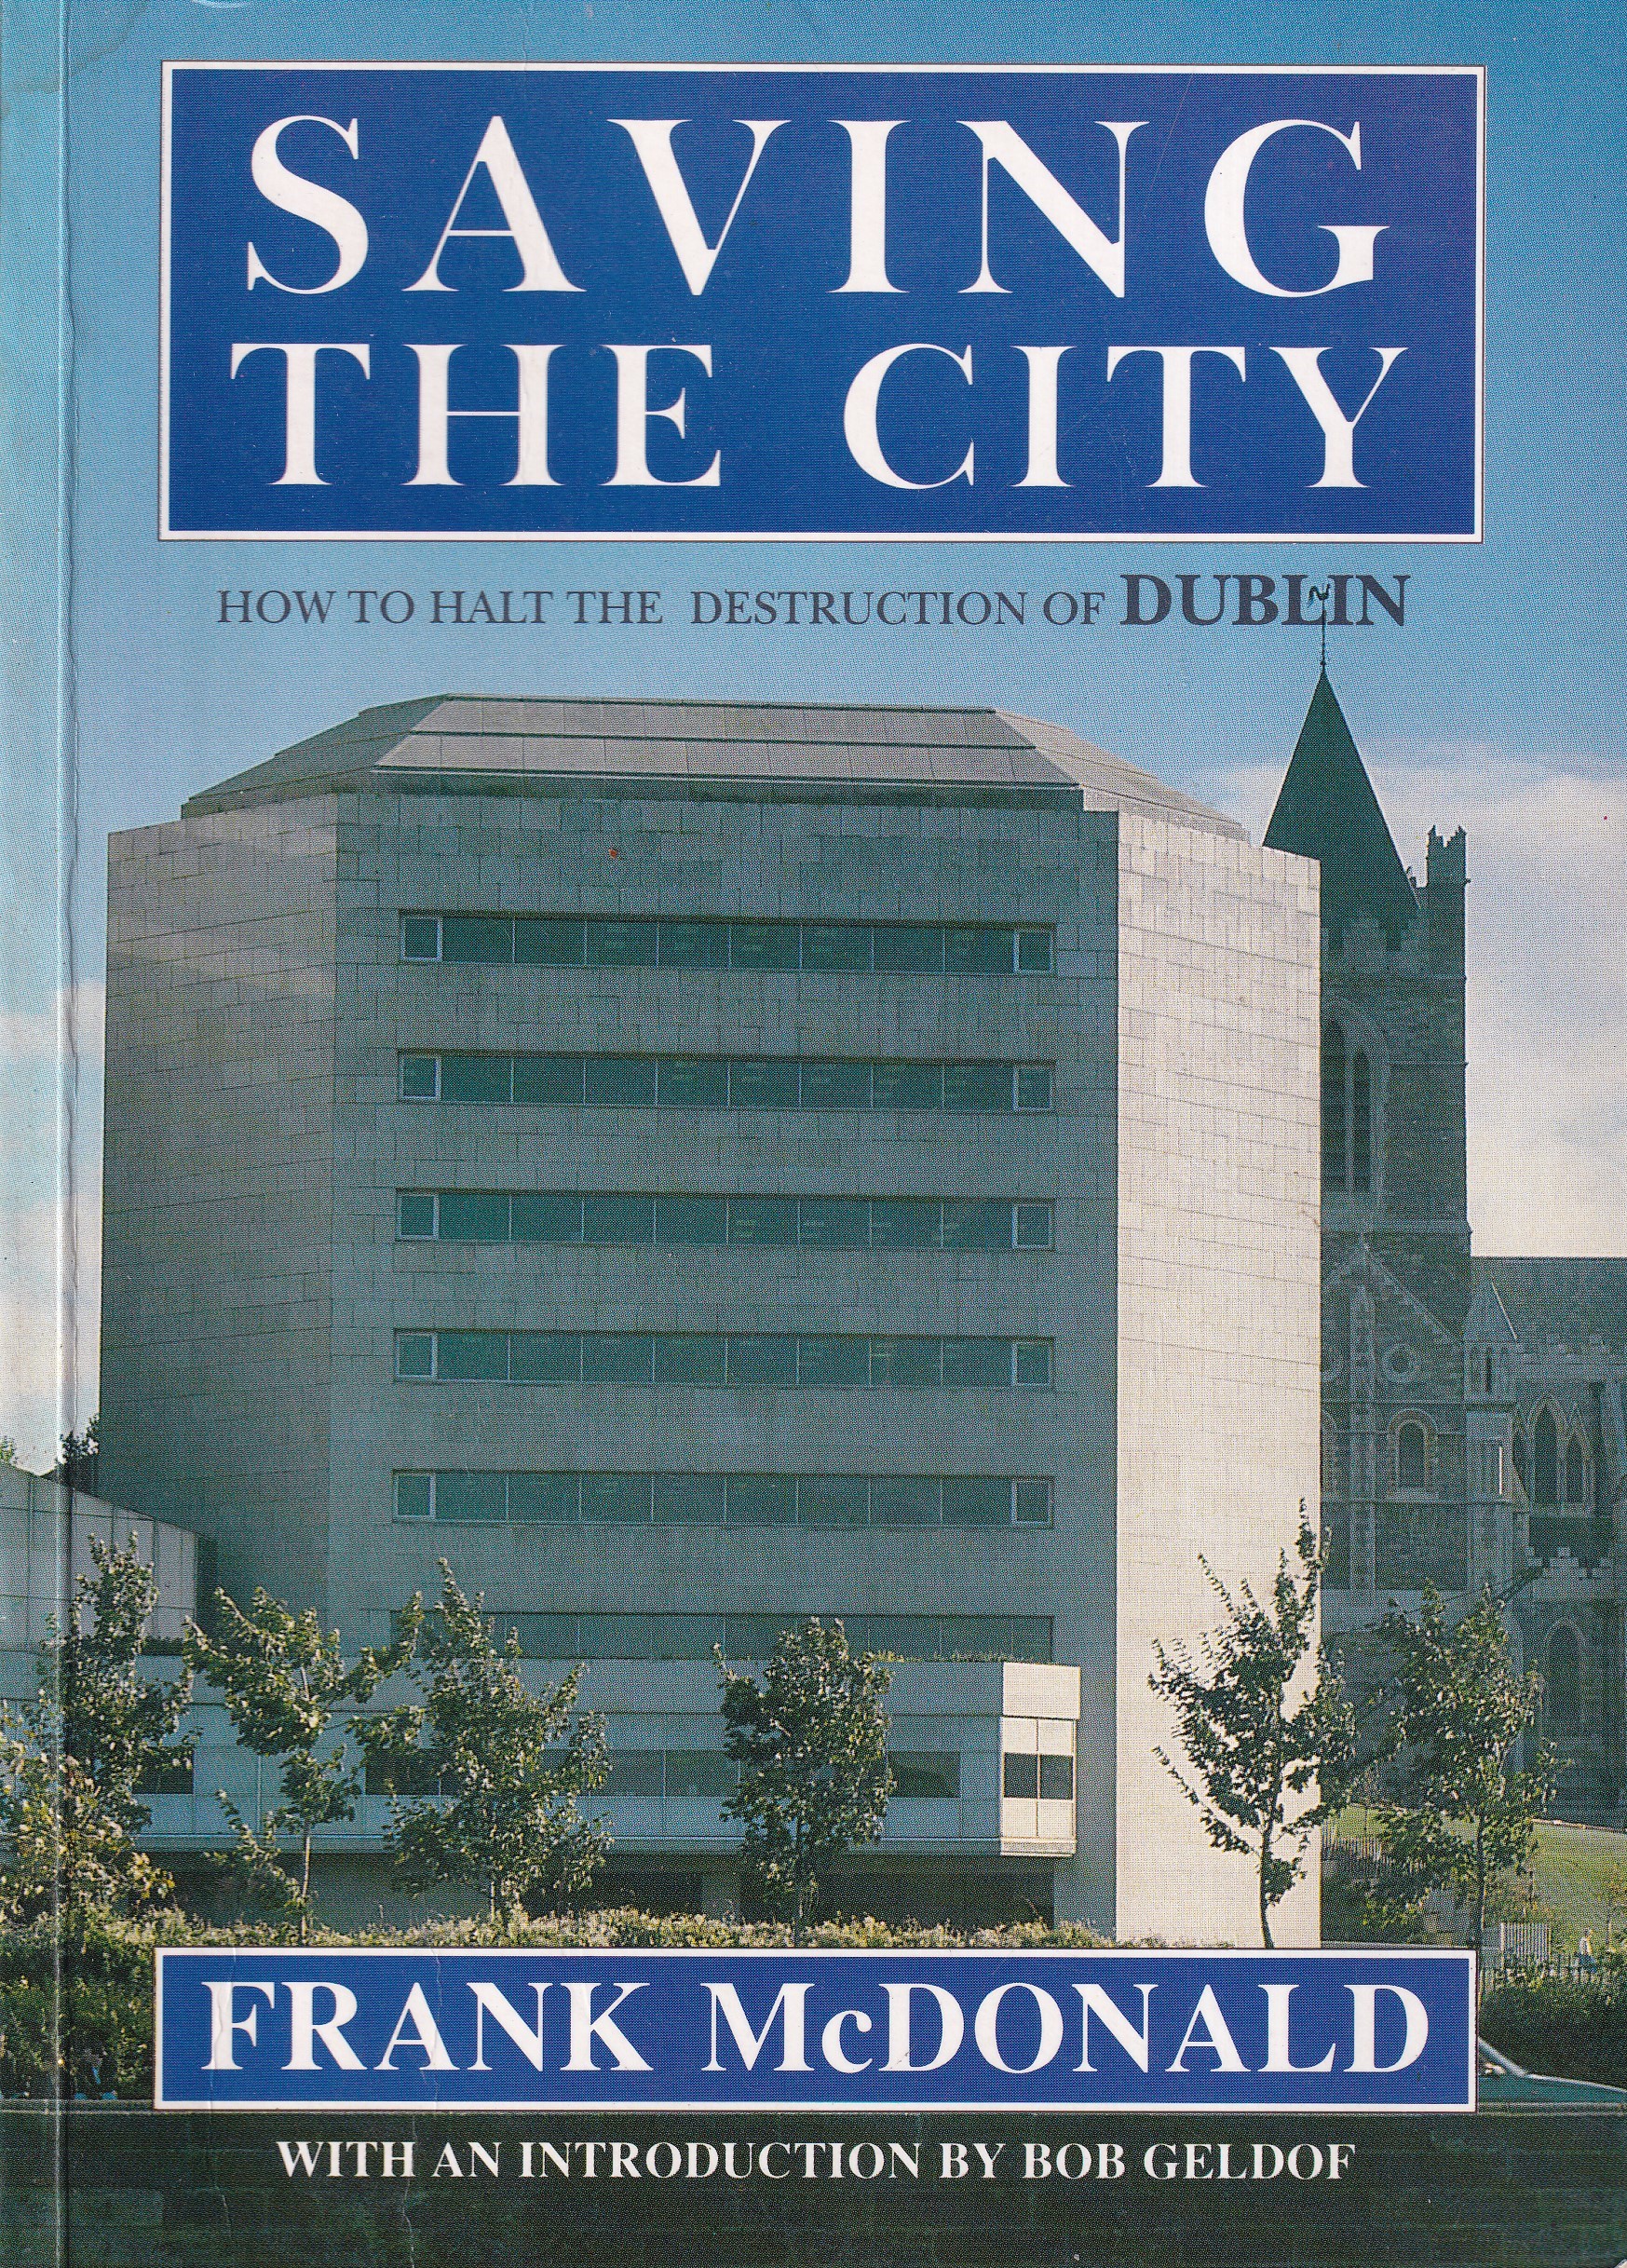 Saving the City: How to Halt the Destruction of Dublin by Frank McDonald